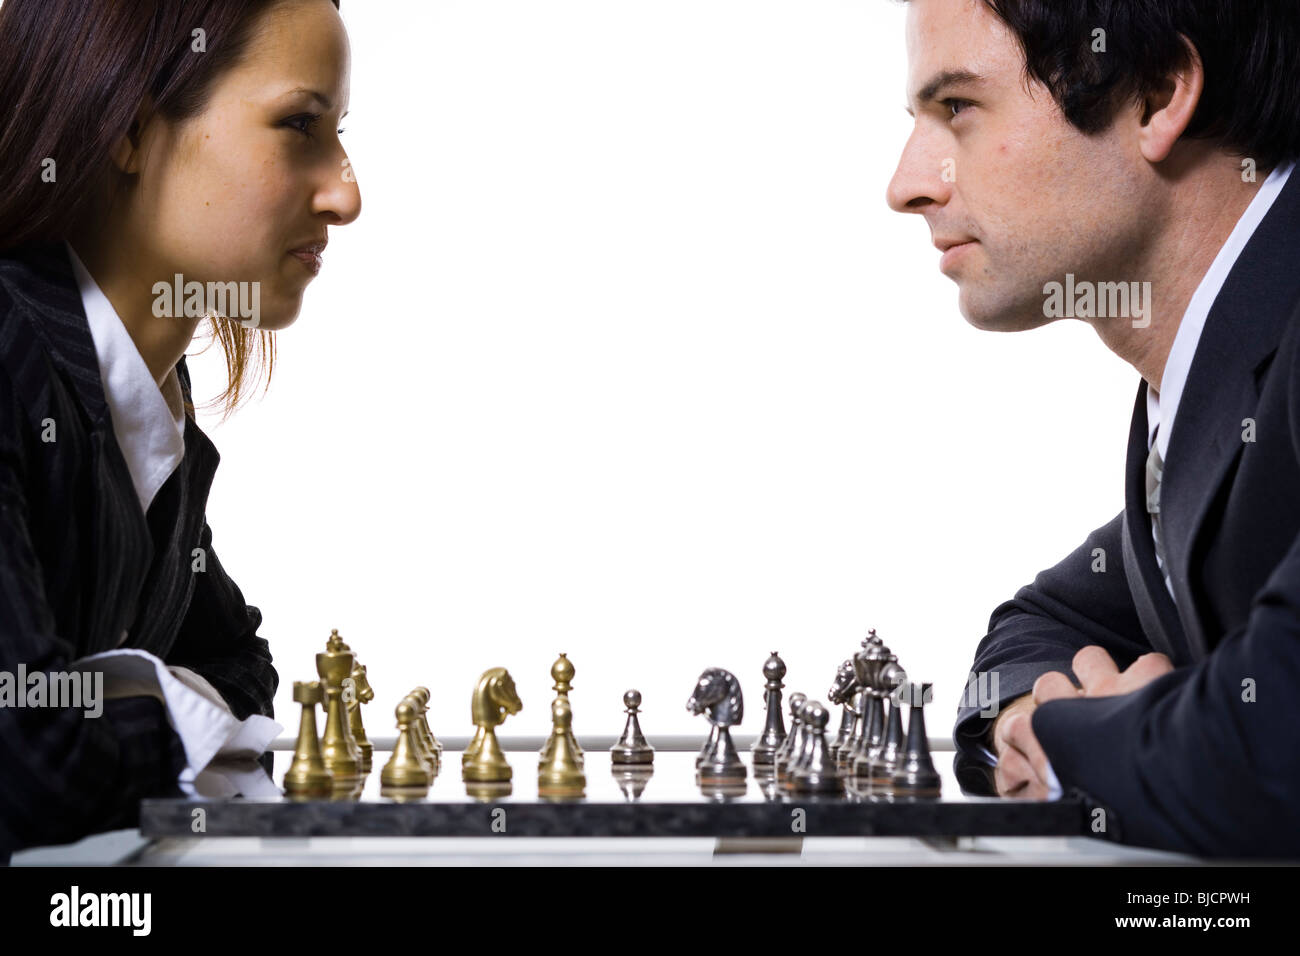 Un hombre y una mujer jugando al ajedrez Foto de stock